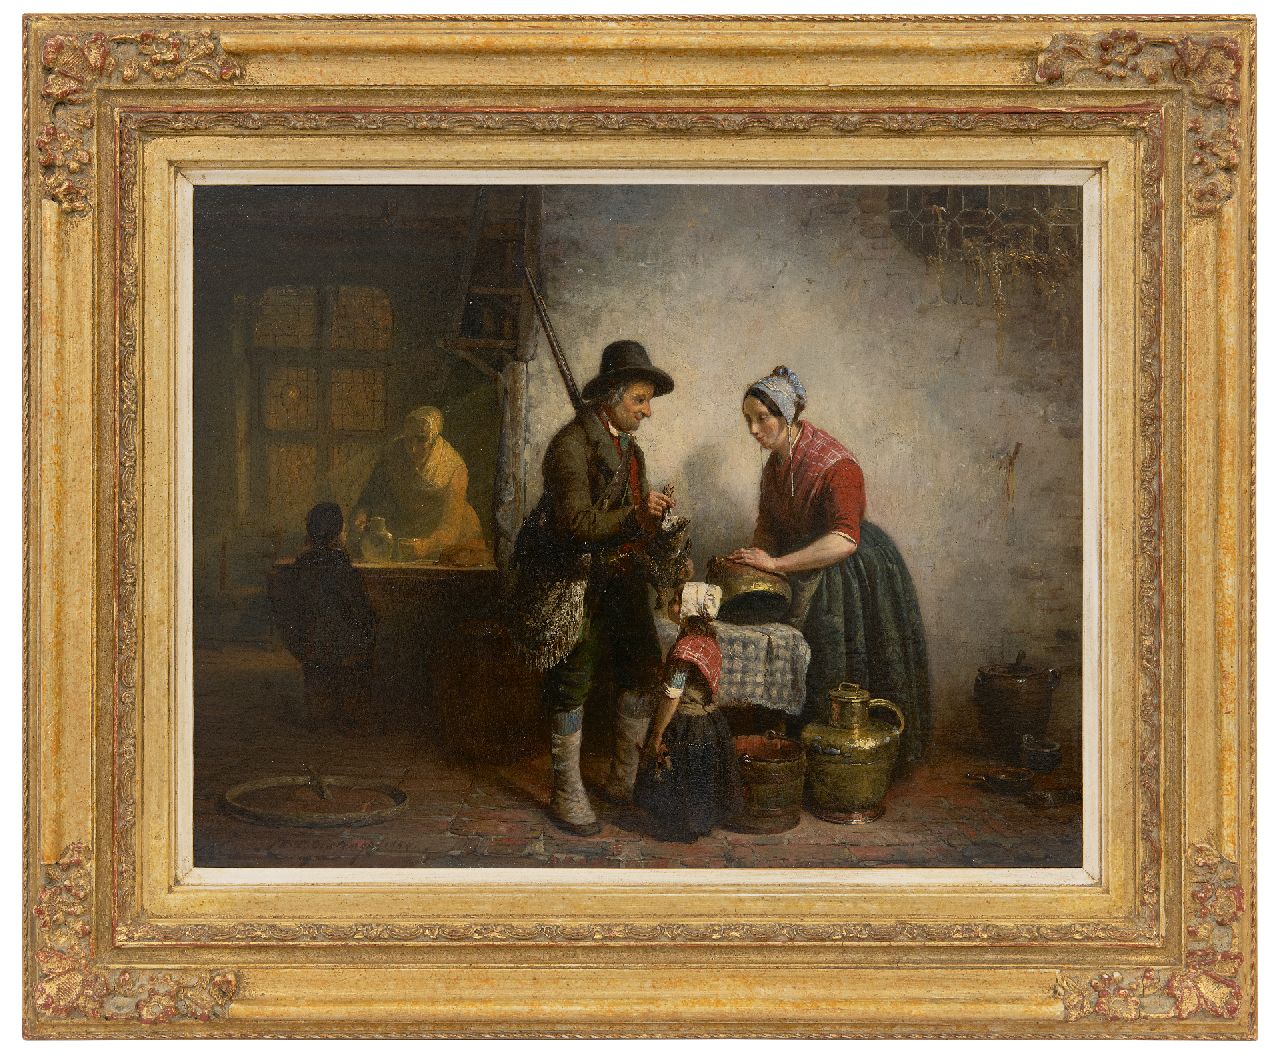 Oostenga T.T.  | Thomas Teekes Oostenga | Schilderijen te koop aangeboden | Thuiskomst van de jacht, olieverf op paneel 33,5 x 43,4 cm, gesigneerd linksonder en gedateerd 1854